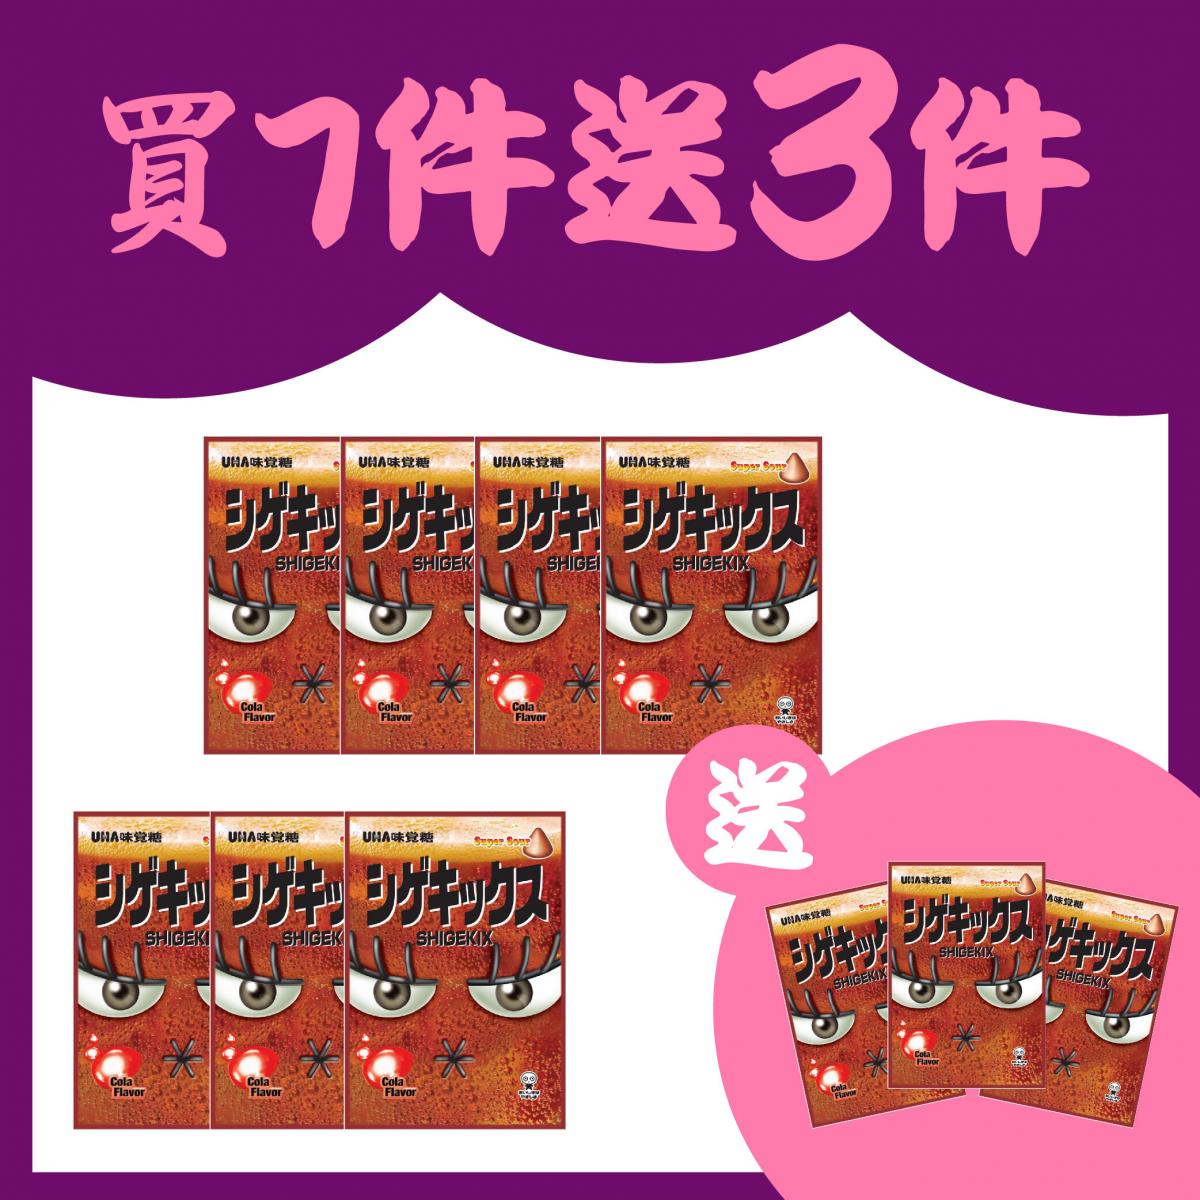 【Buy 7 Get 3 Free】Shigekix Bag Gummy (Super Cola Flavor) 25g (647424)